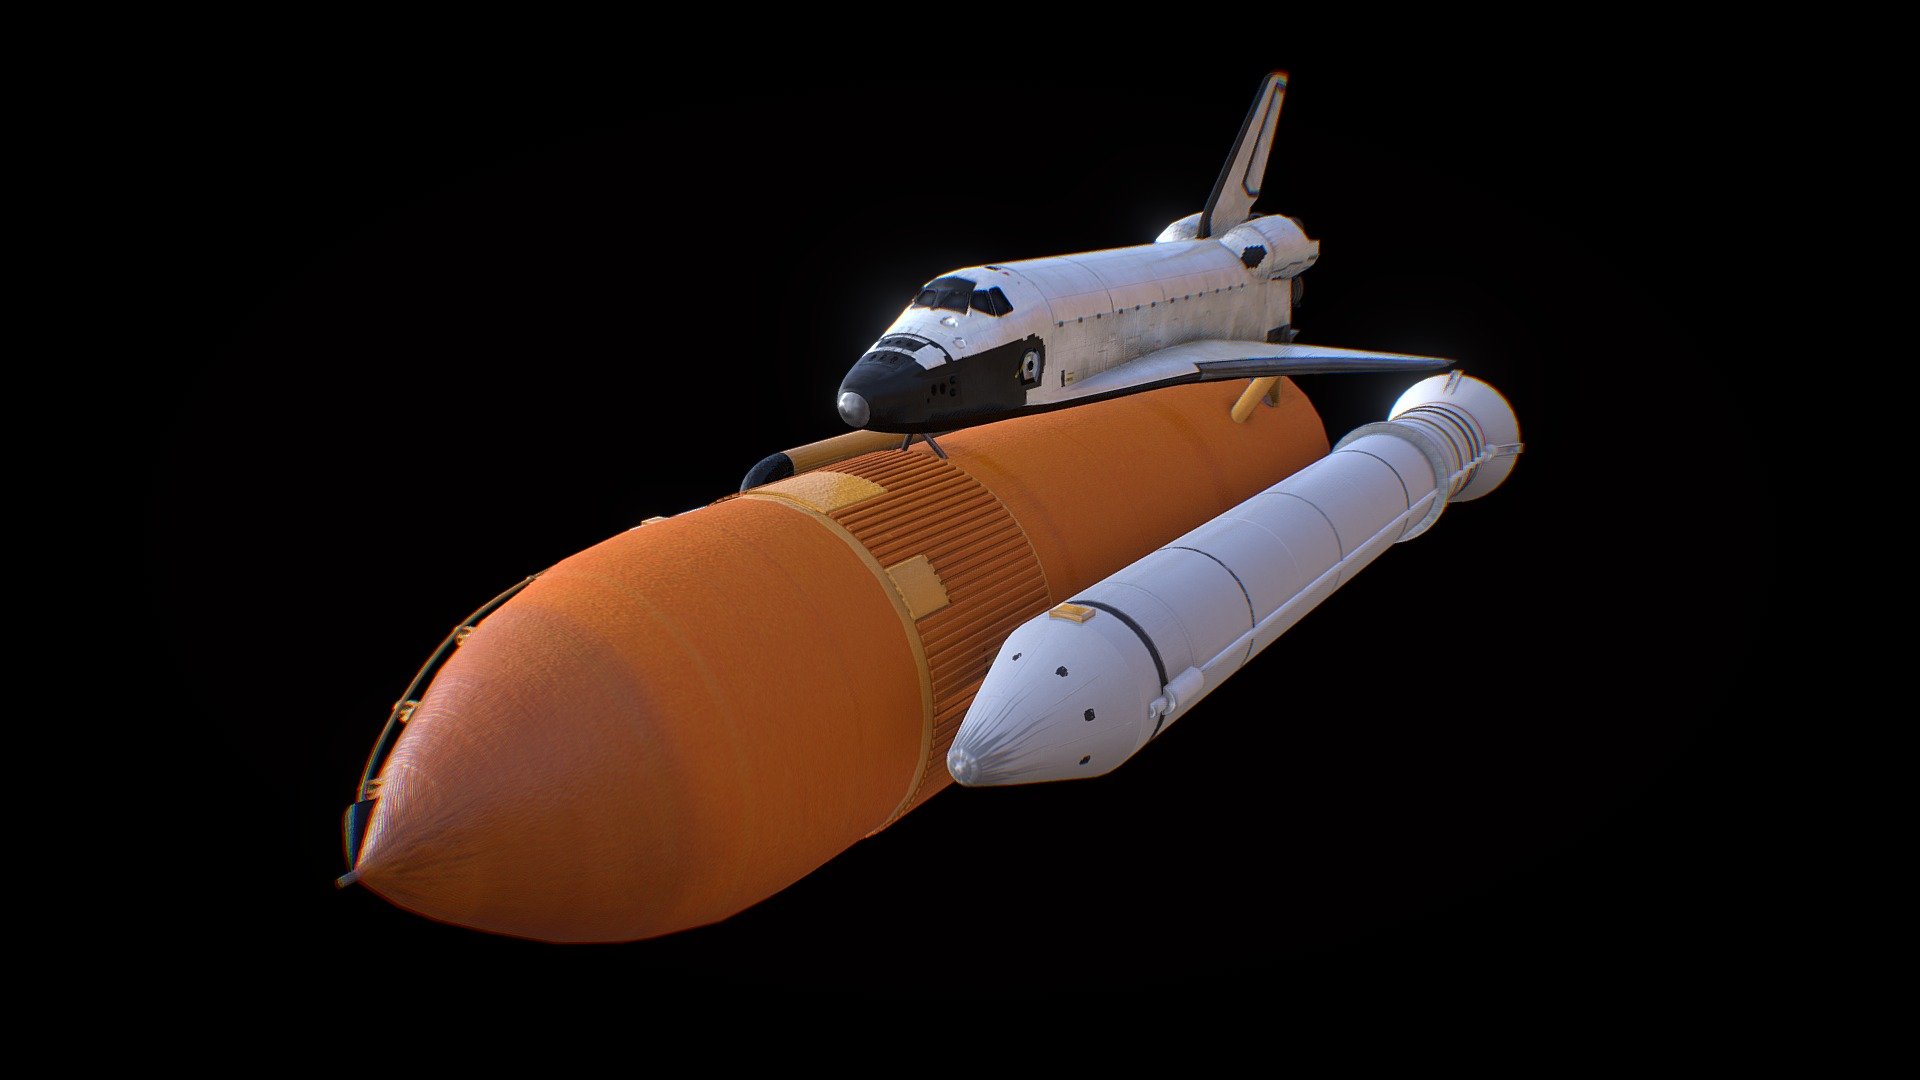 3d model of Space Shuttle - Space Shuttle - Buy Royalty Free 3D model by msanjurj 3d model